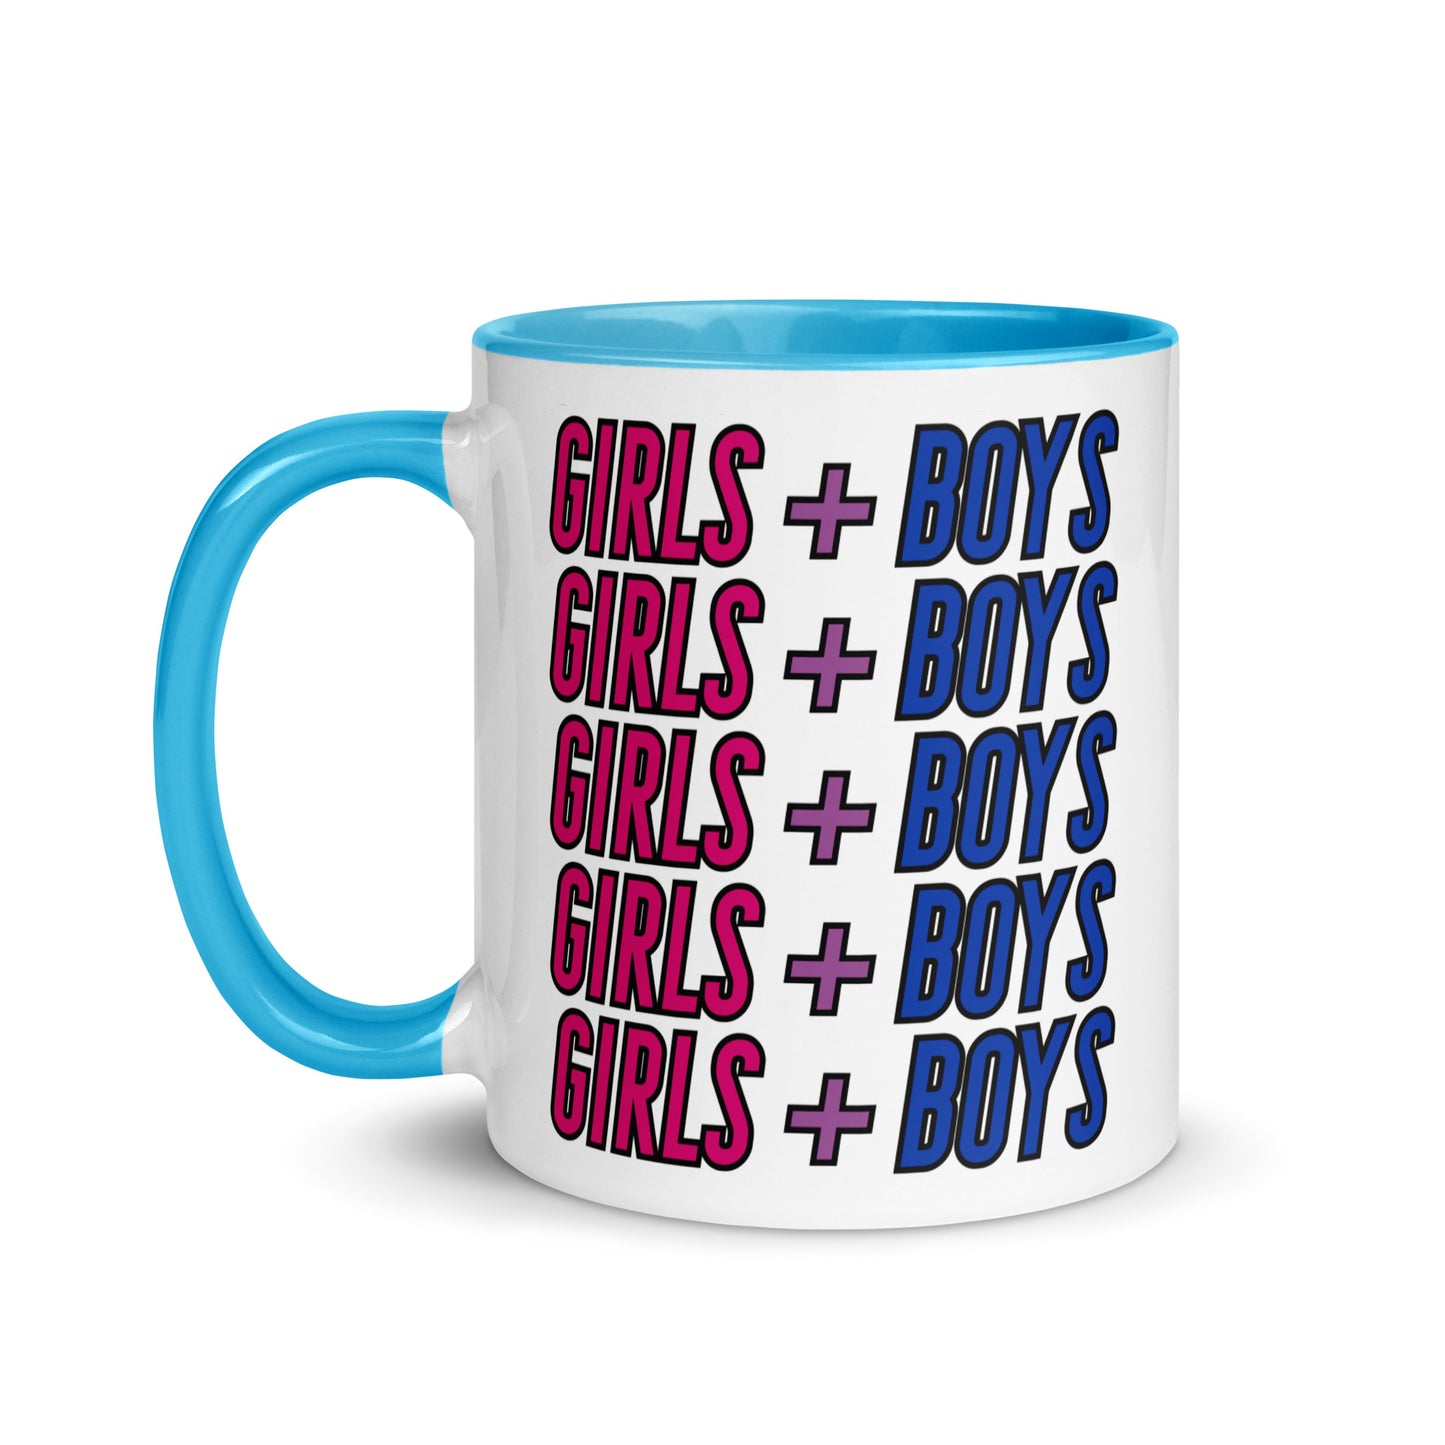 Bisexual Pride Mug